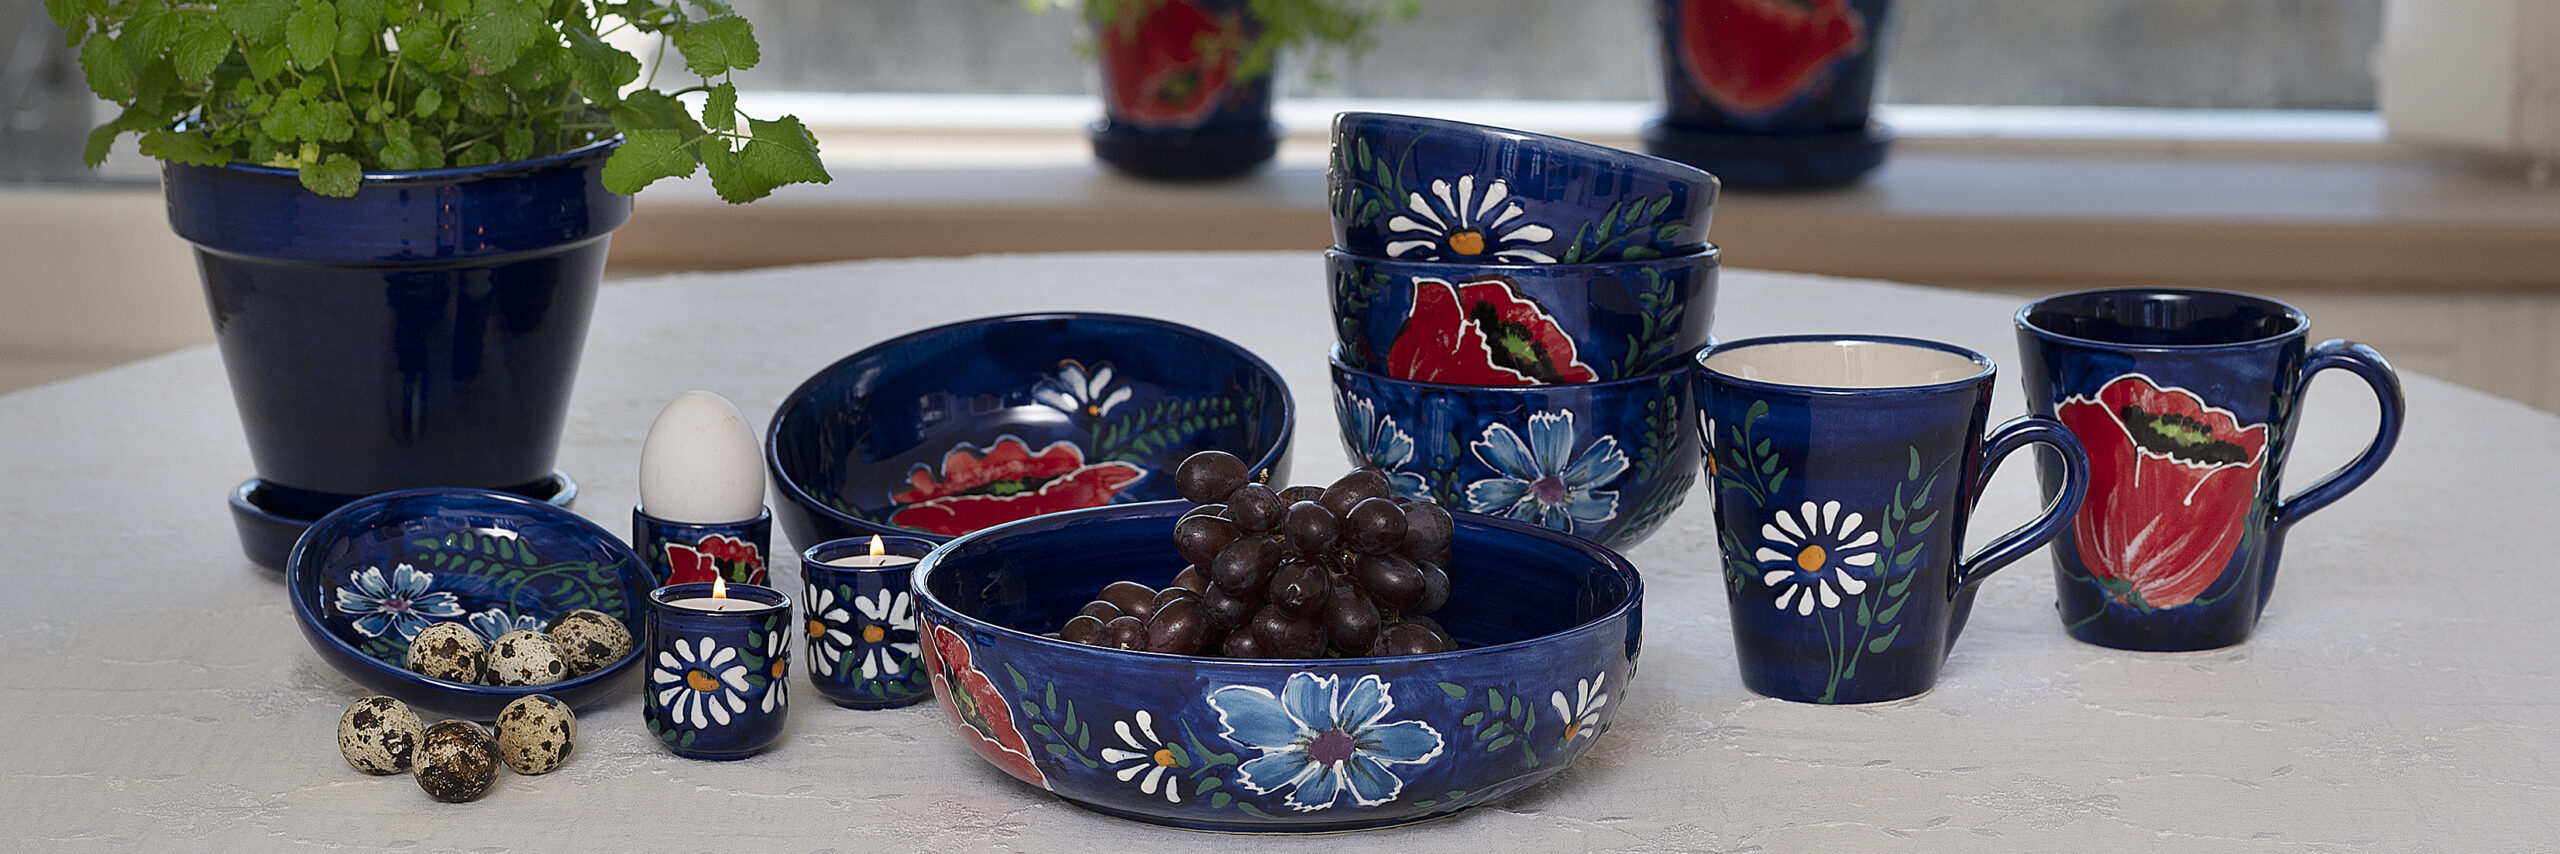 Casa Jada Keramik Spansk Forsidebilledet med Anna-serien. Blå bundfarve med valmuer, margeritter og kornblomster på hvid dug. Urtepotter i baggrund.